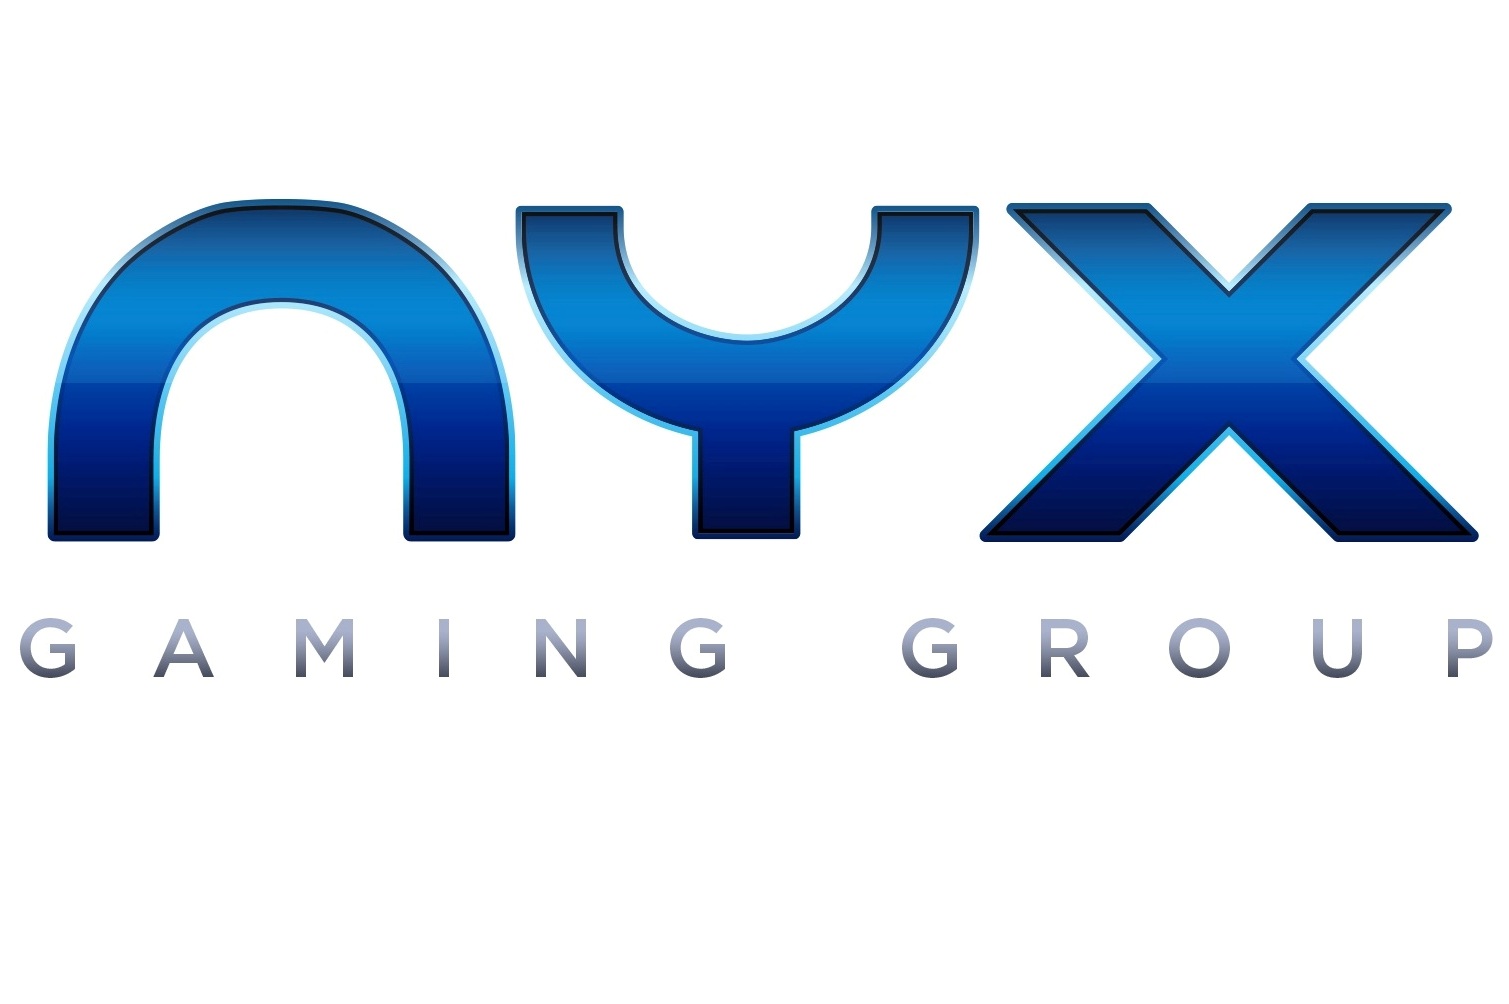 Nyx Gaming